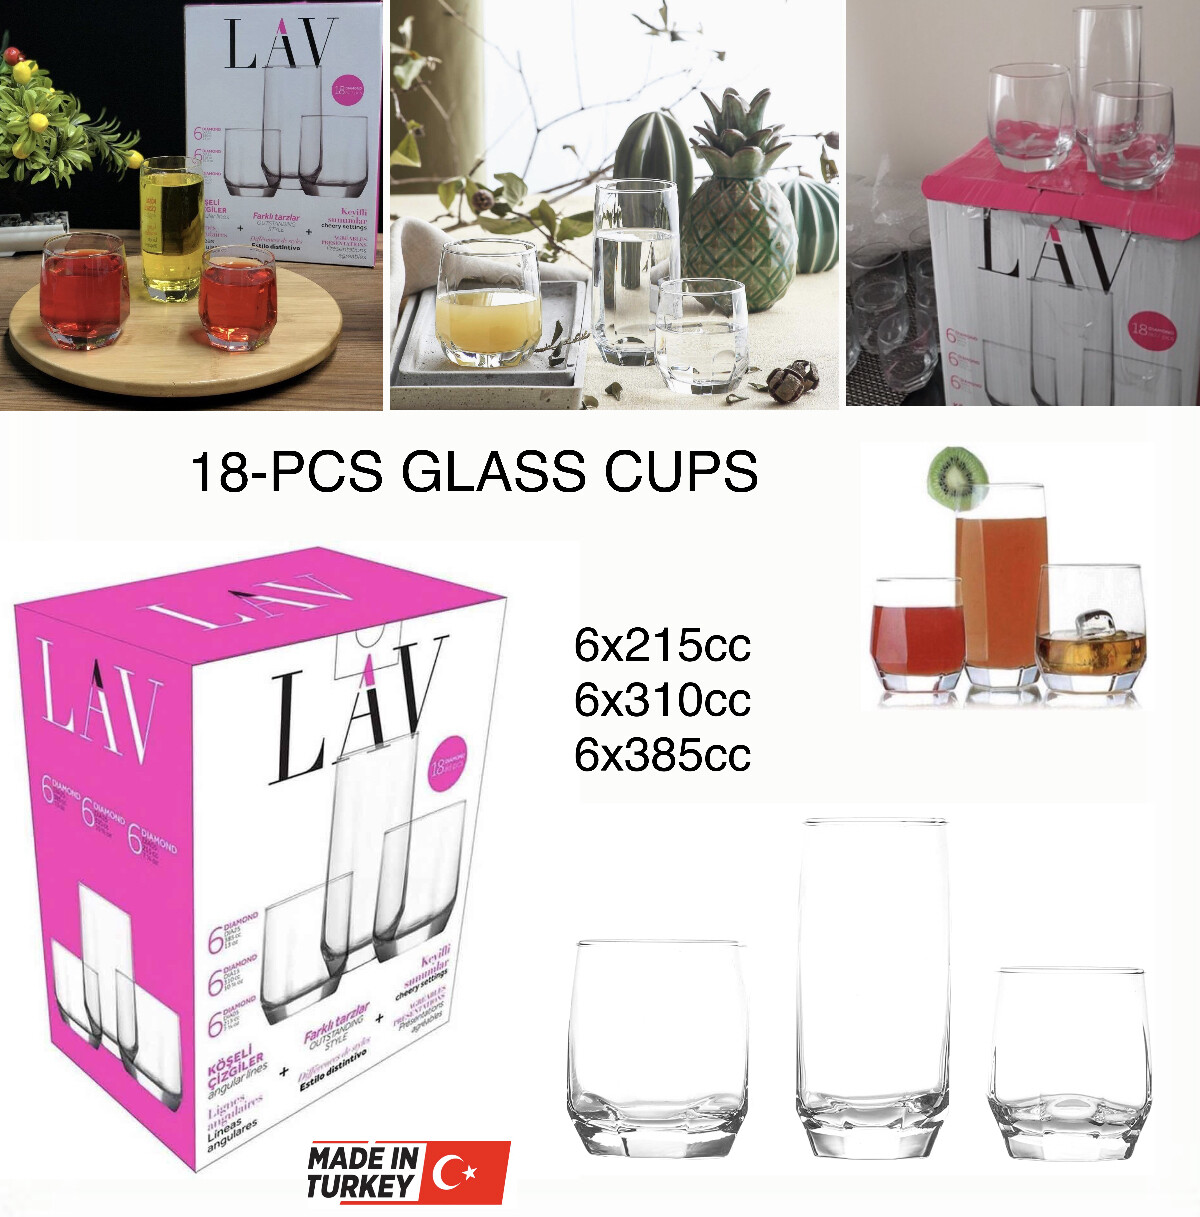 18-Pcs Glass Cups